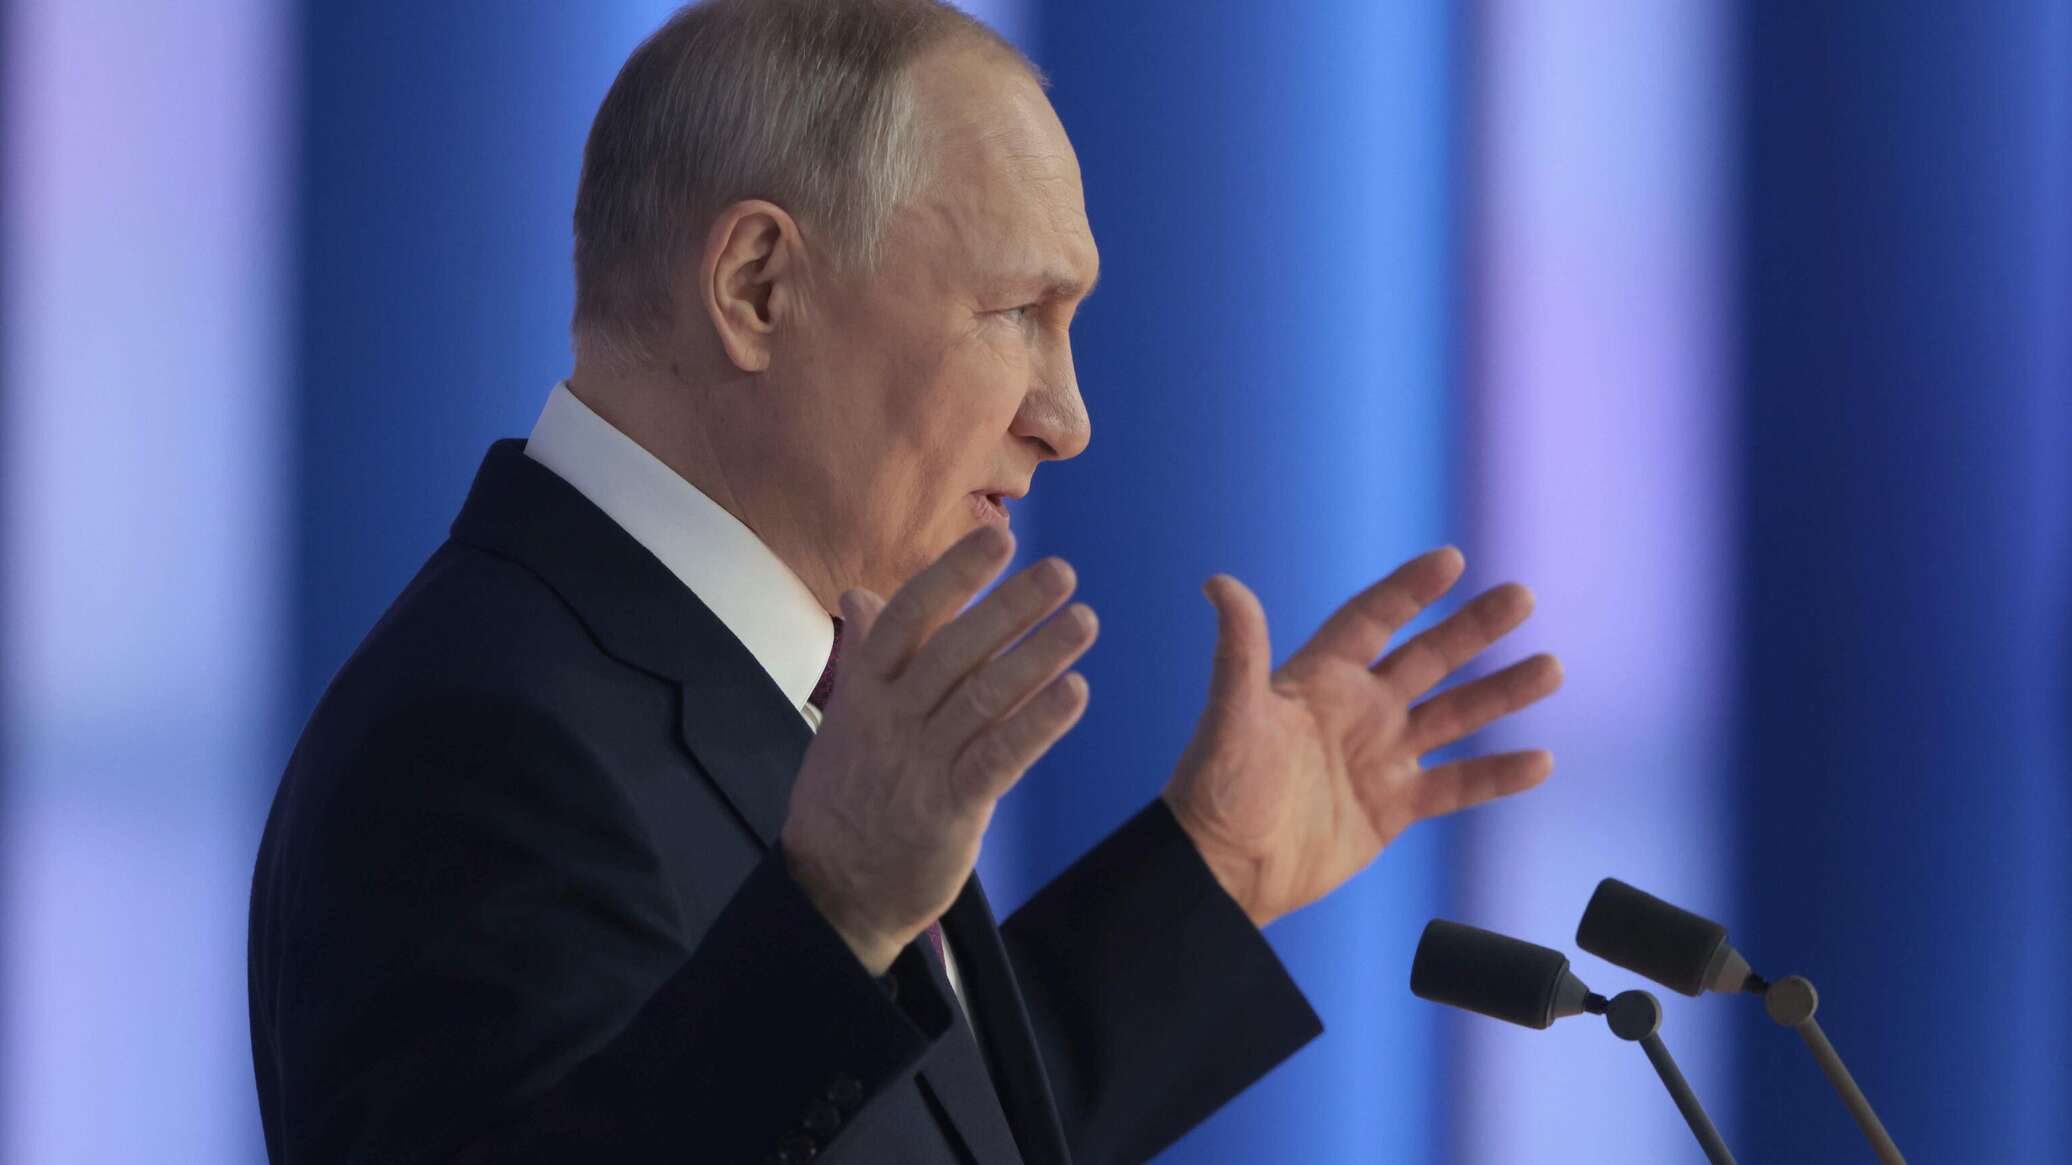 بوتين: روسيا لن تقبل بعقوبات أحادية الجانب غير مشروعة ويجب رفعها